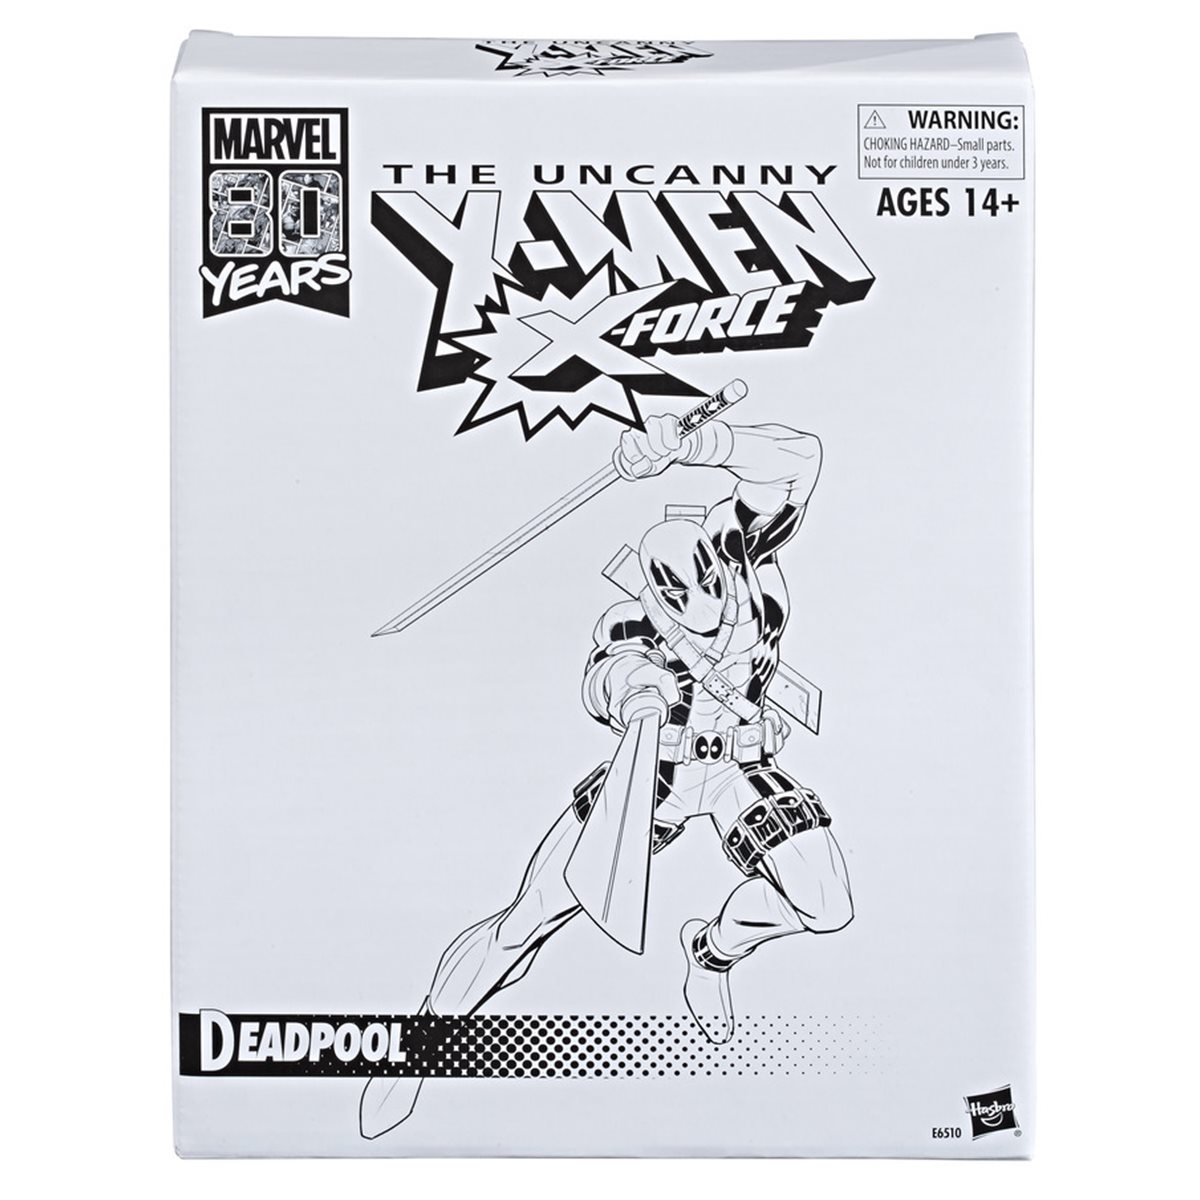 Marvel Legends 6" Inch Vintage Retor 80th Uncanny X-Men Deadpool Loose Complete 